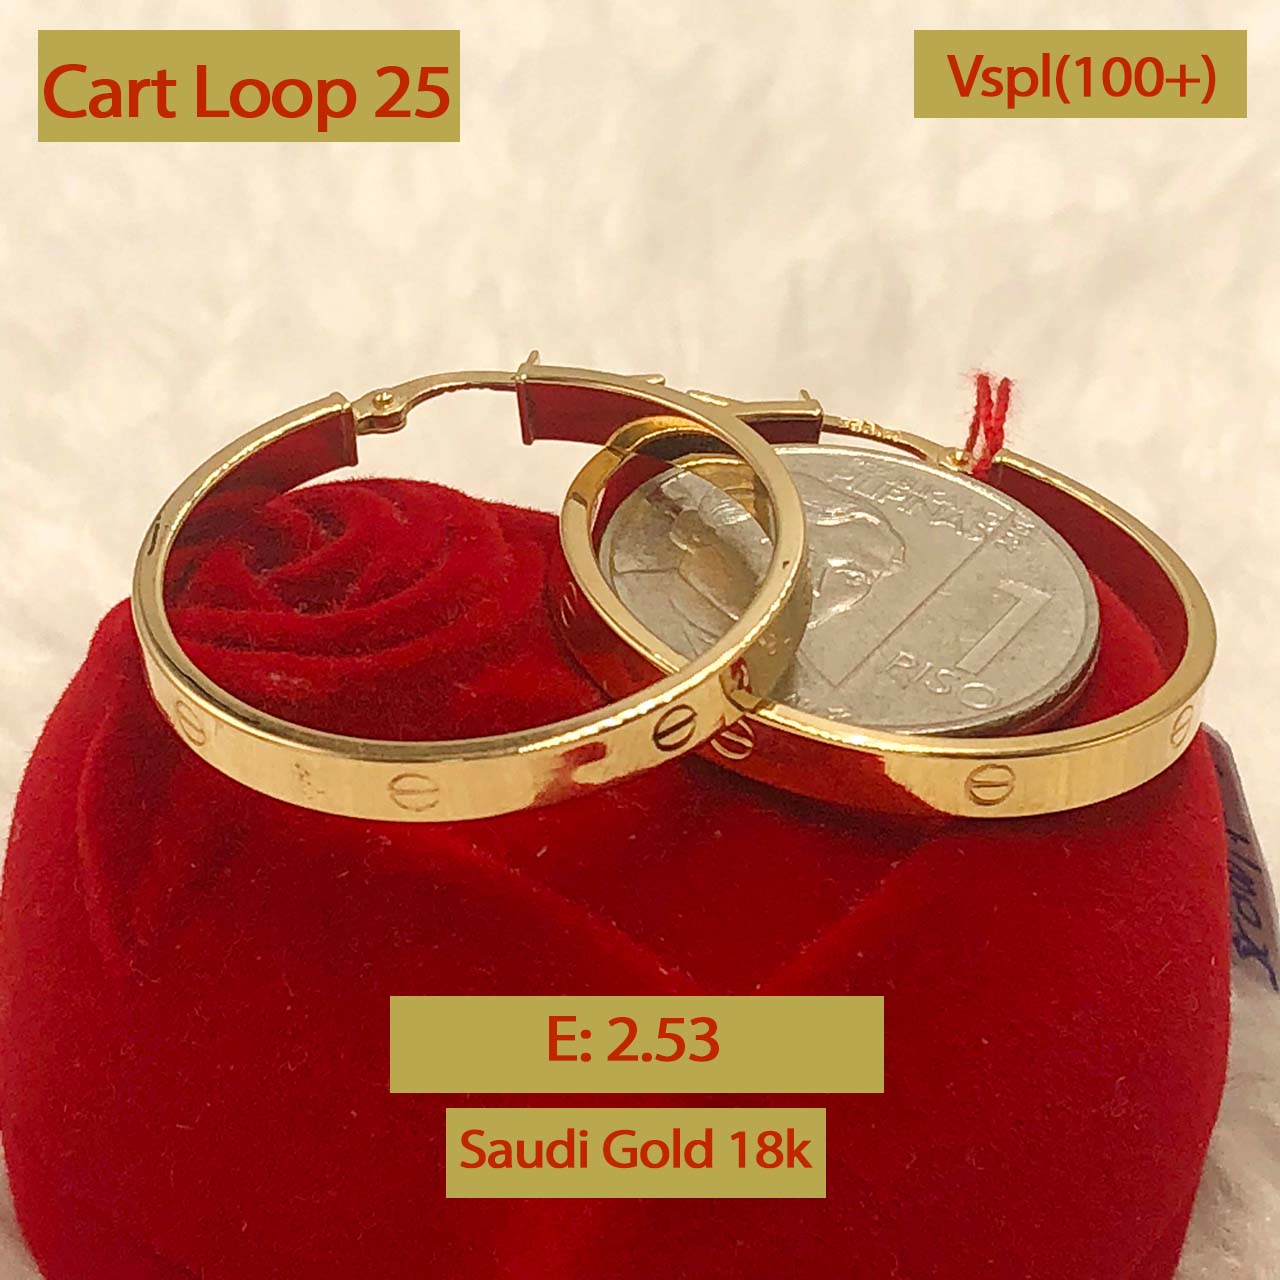 Cart Loop 25 Earrings 2.53g